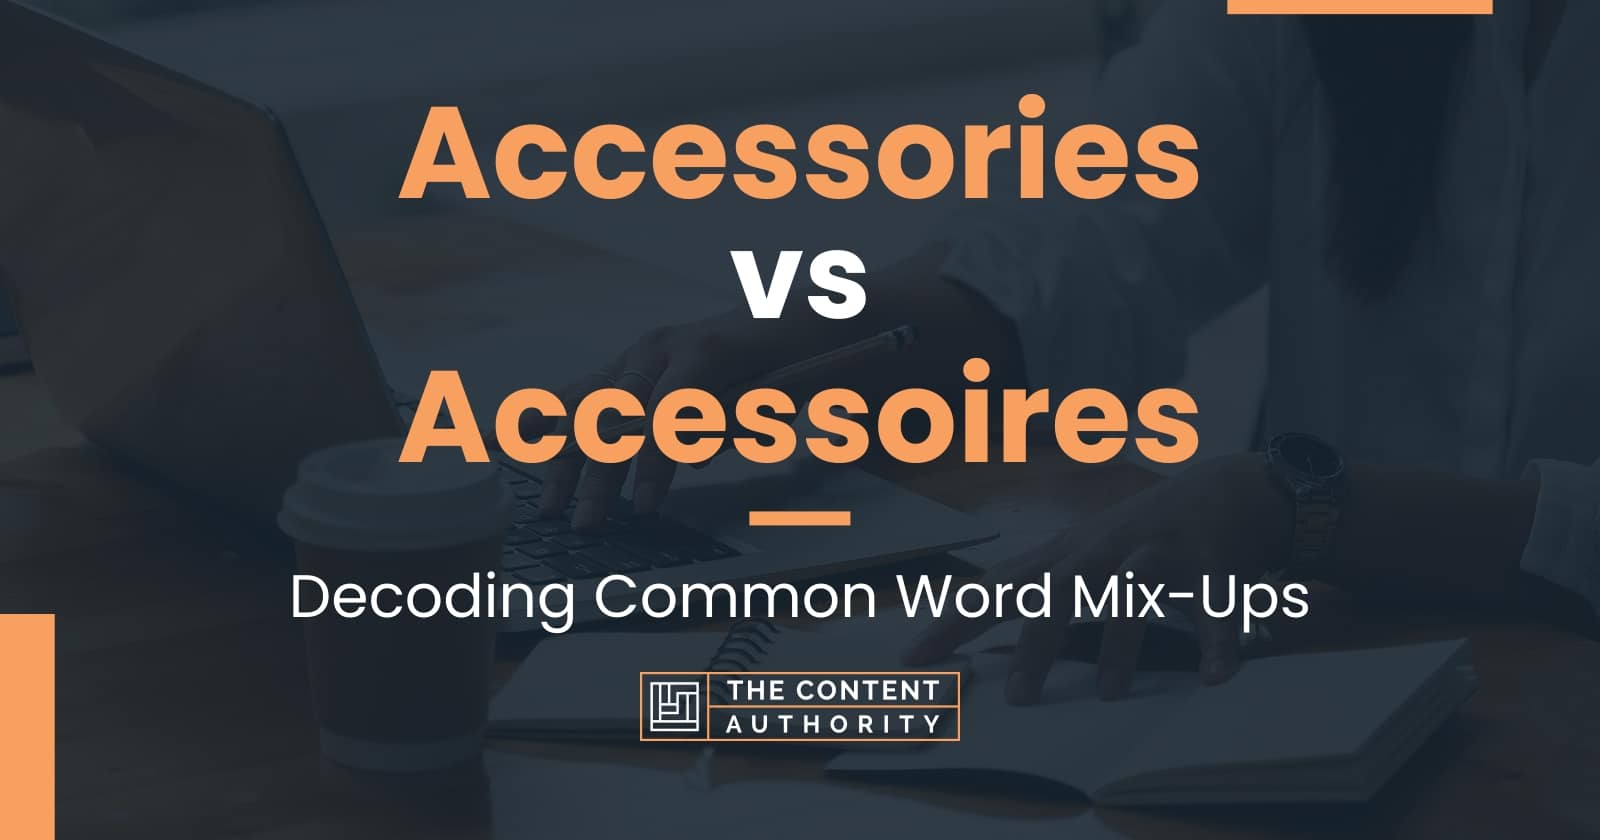 Vend om mængde af salg Under ~ Accessories vs Accessoires: Decoding Common Word Mix-Ups